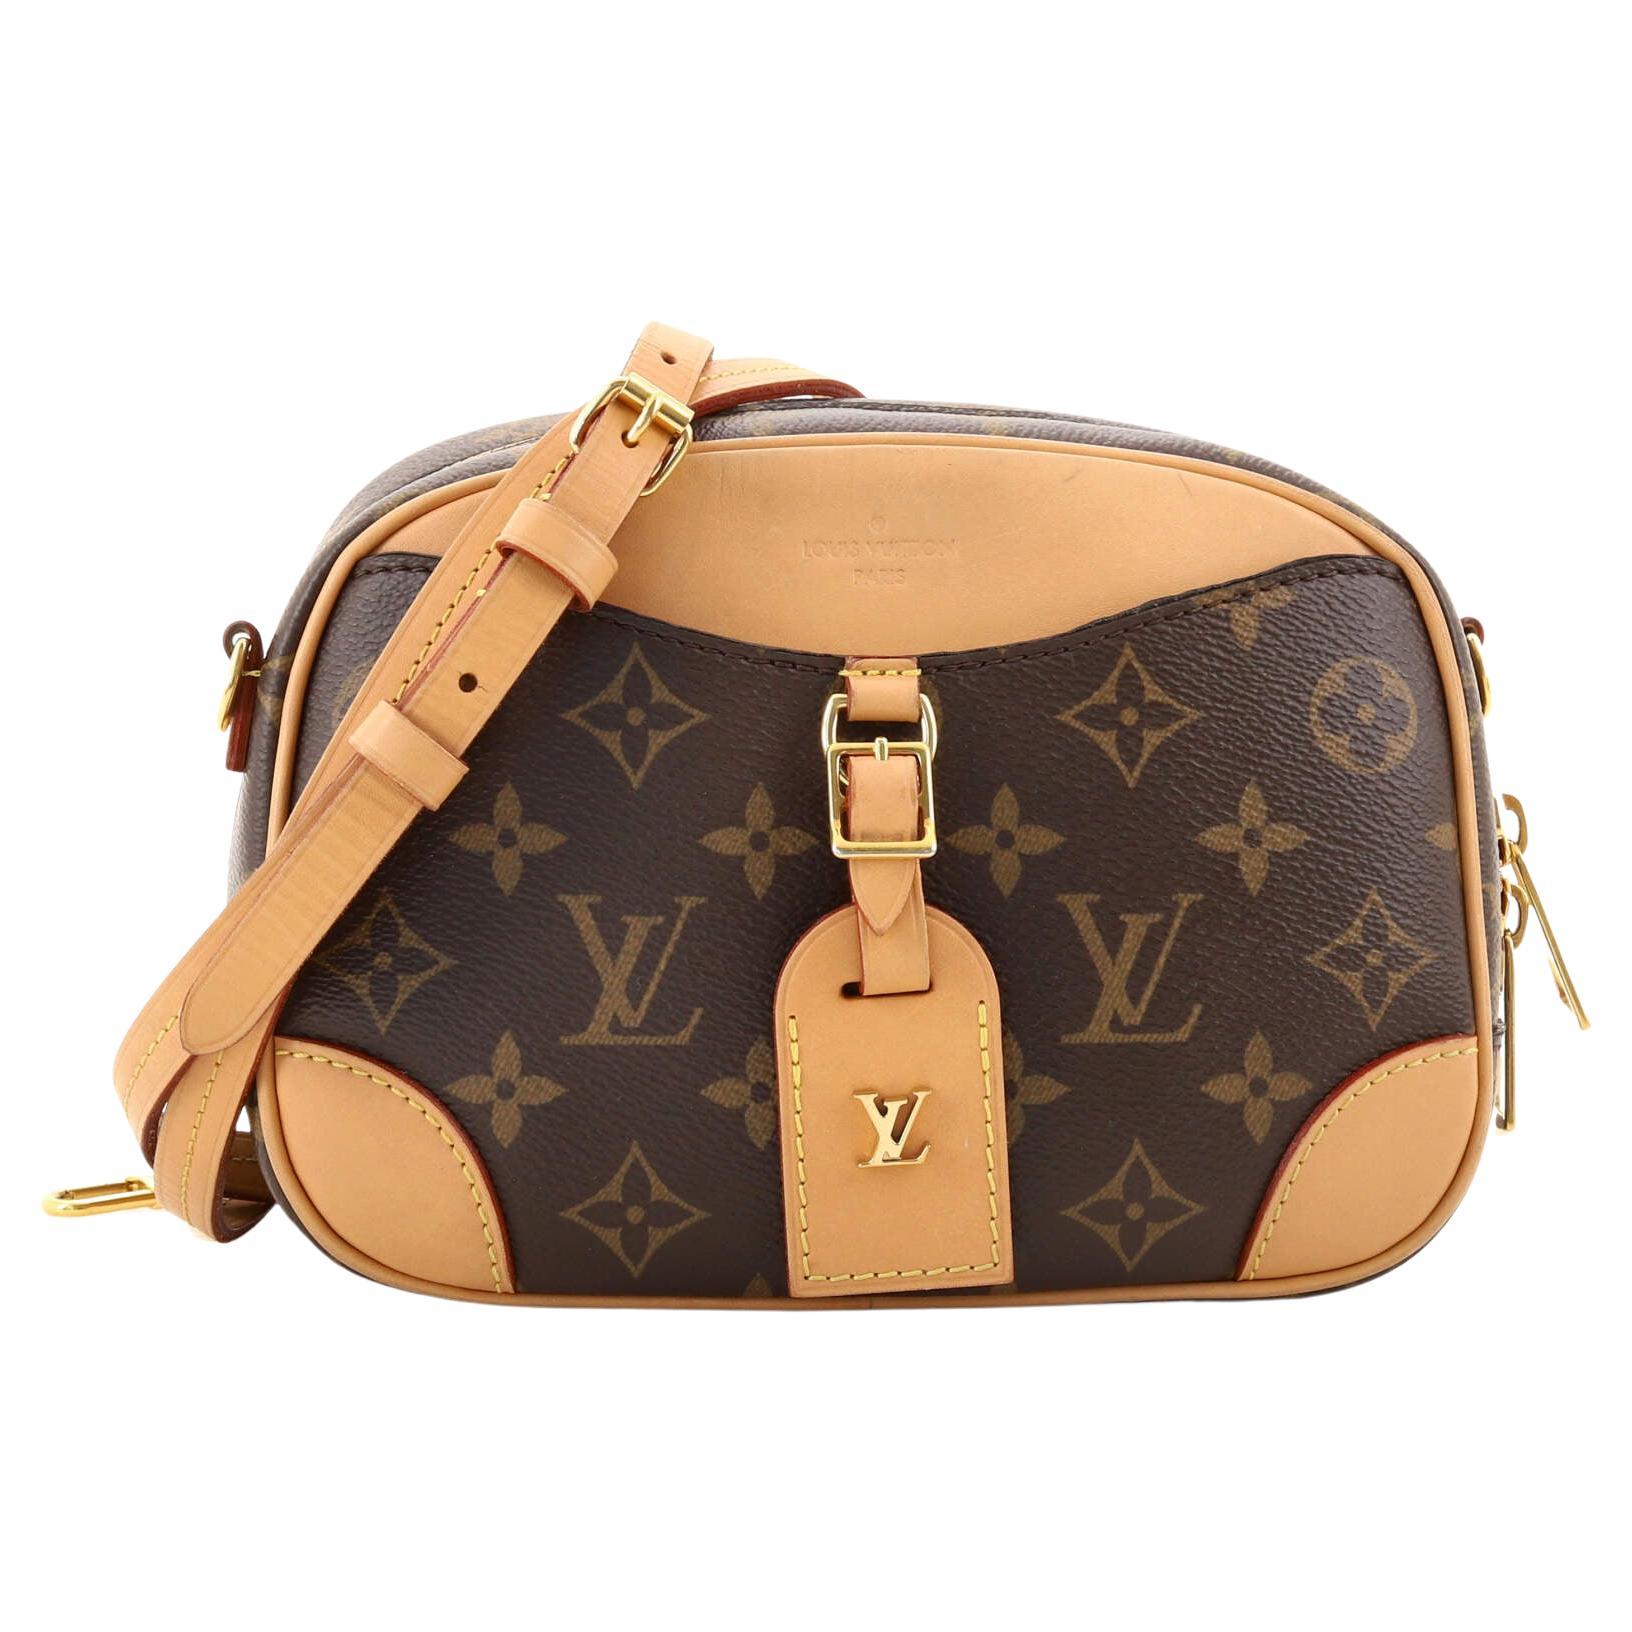 Louis Vuitton Deauville Handbag Auction